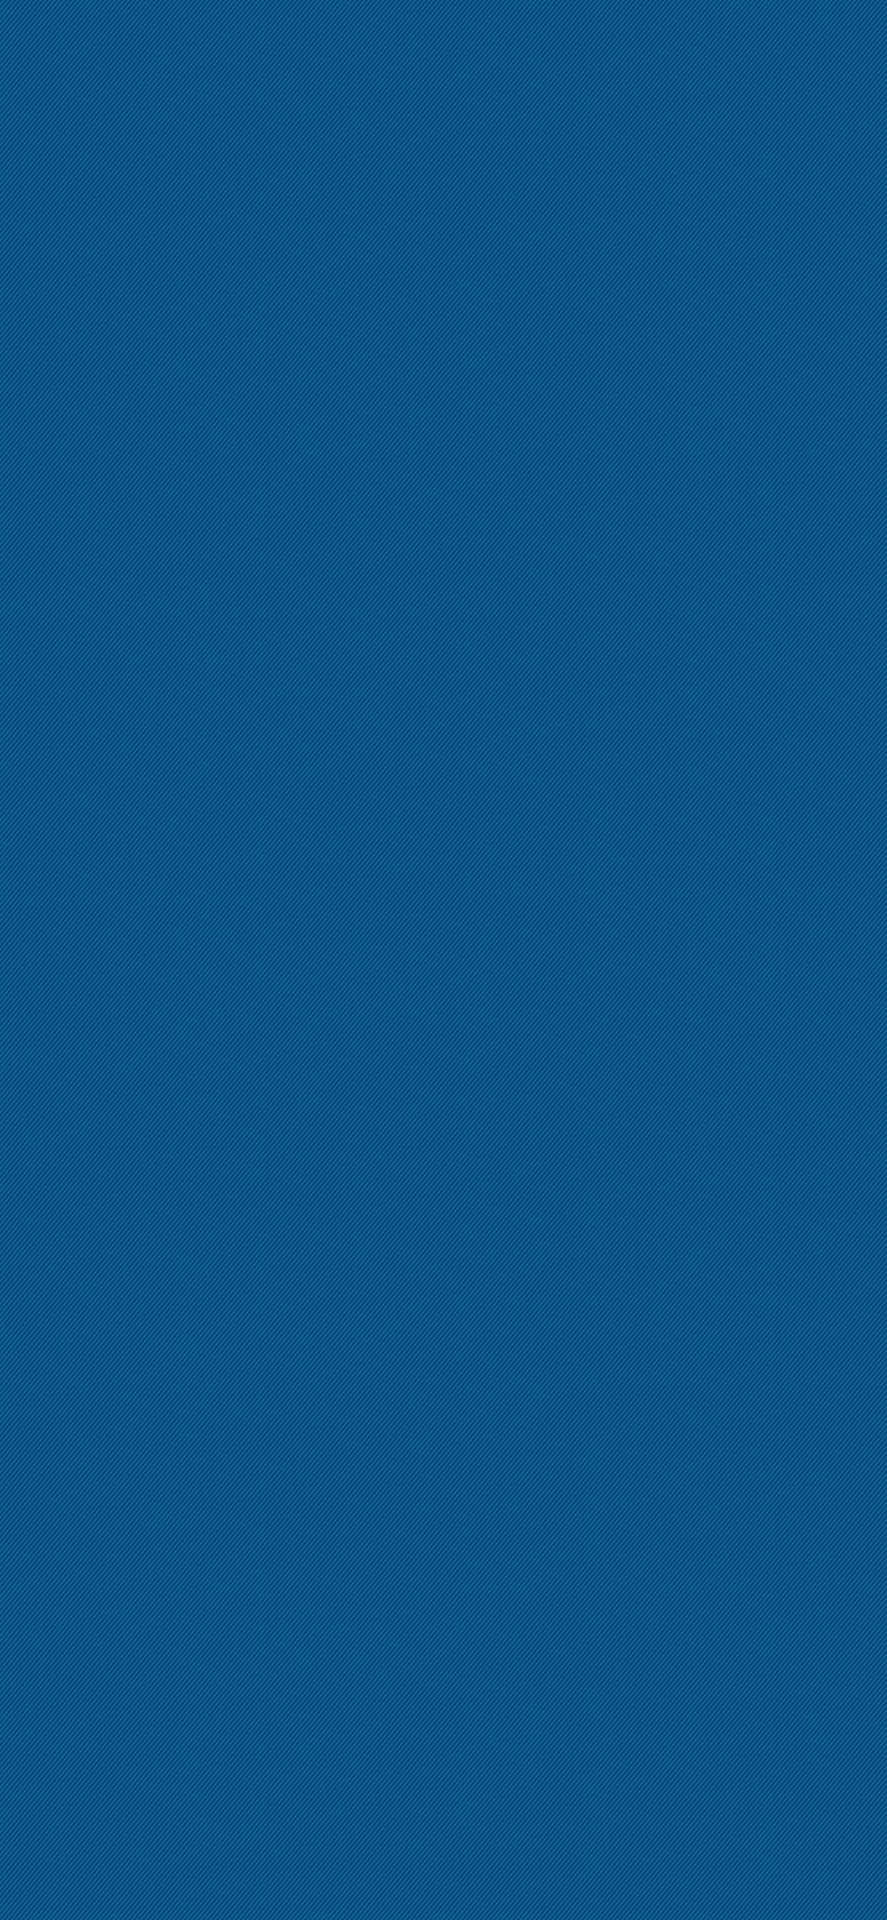 Einblauer Hintergrund Mit Einem Weißen Pfeil.